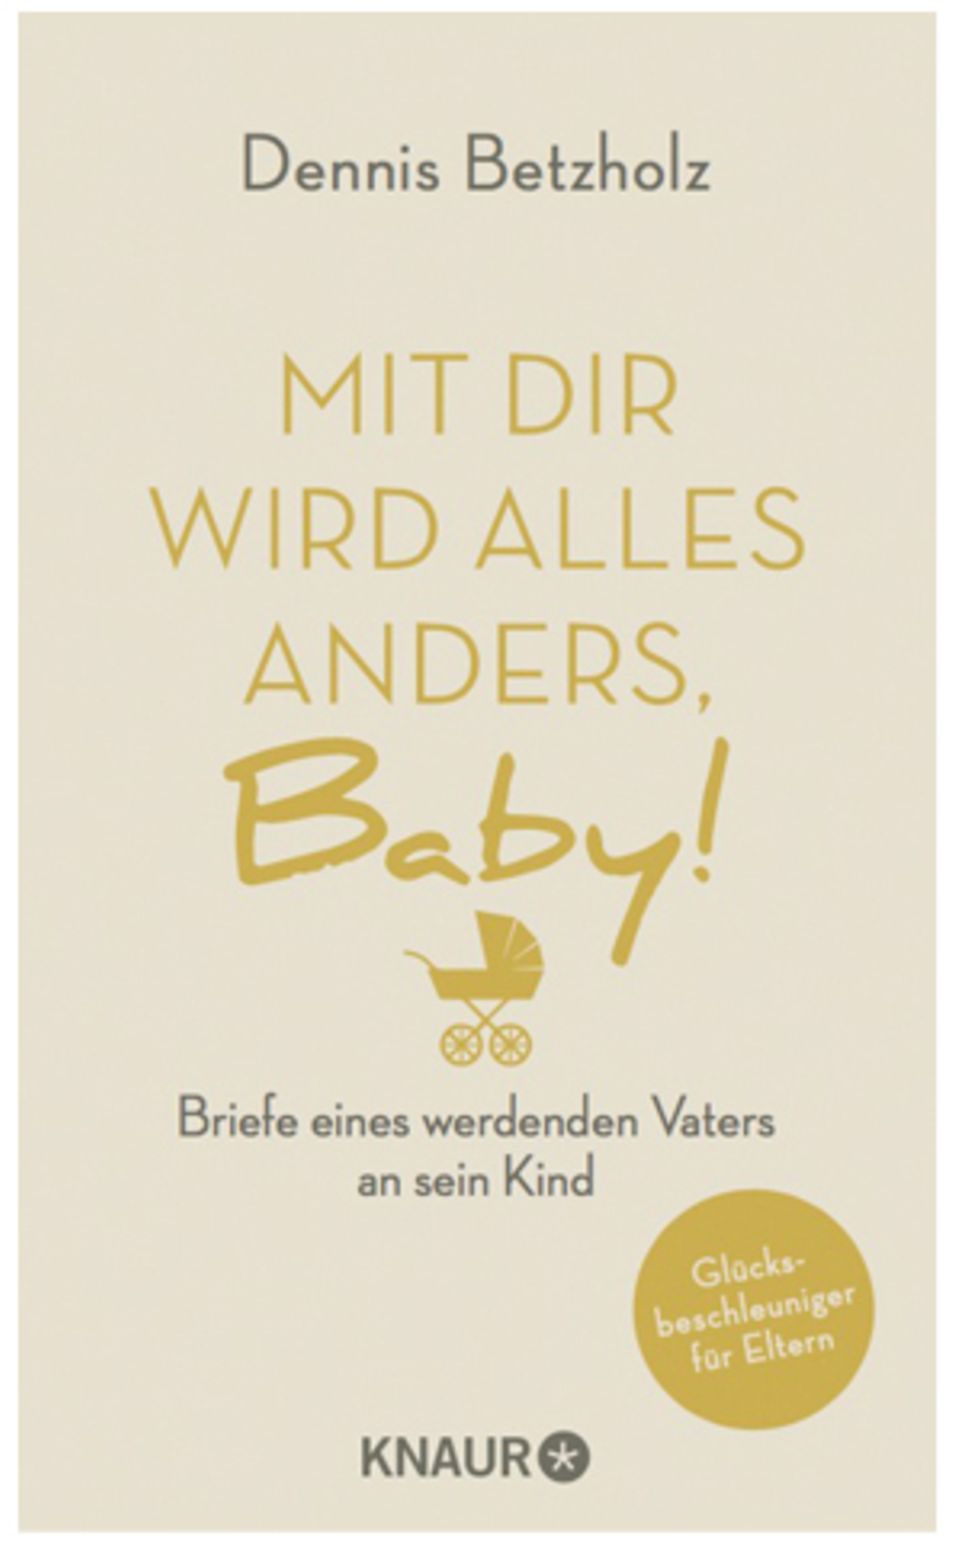 "Mit dir wird alles anders, Baby!" Briefe eines werdenden Vaters an sein Kind - ein Buch von Dennis Betzholz. 